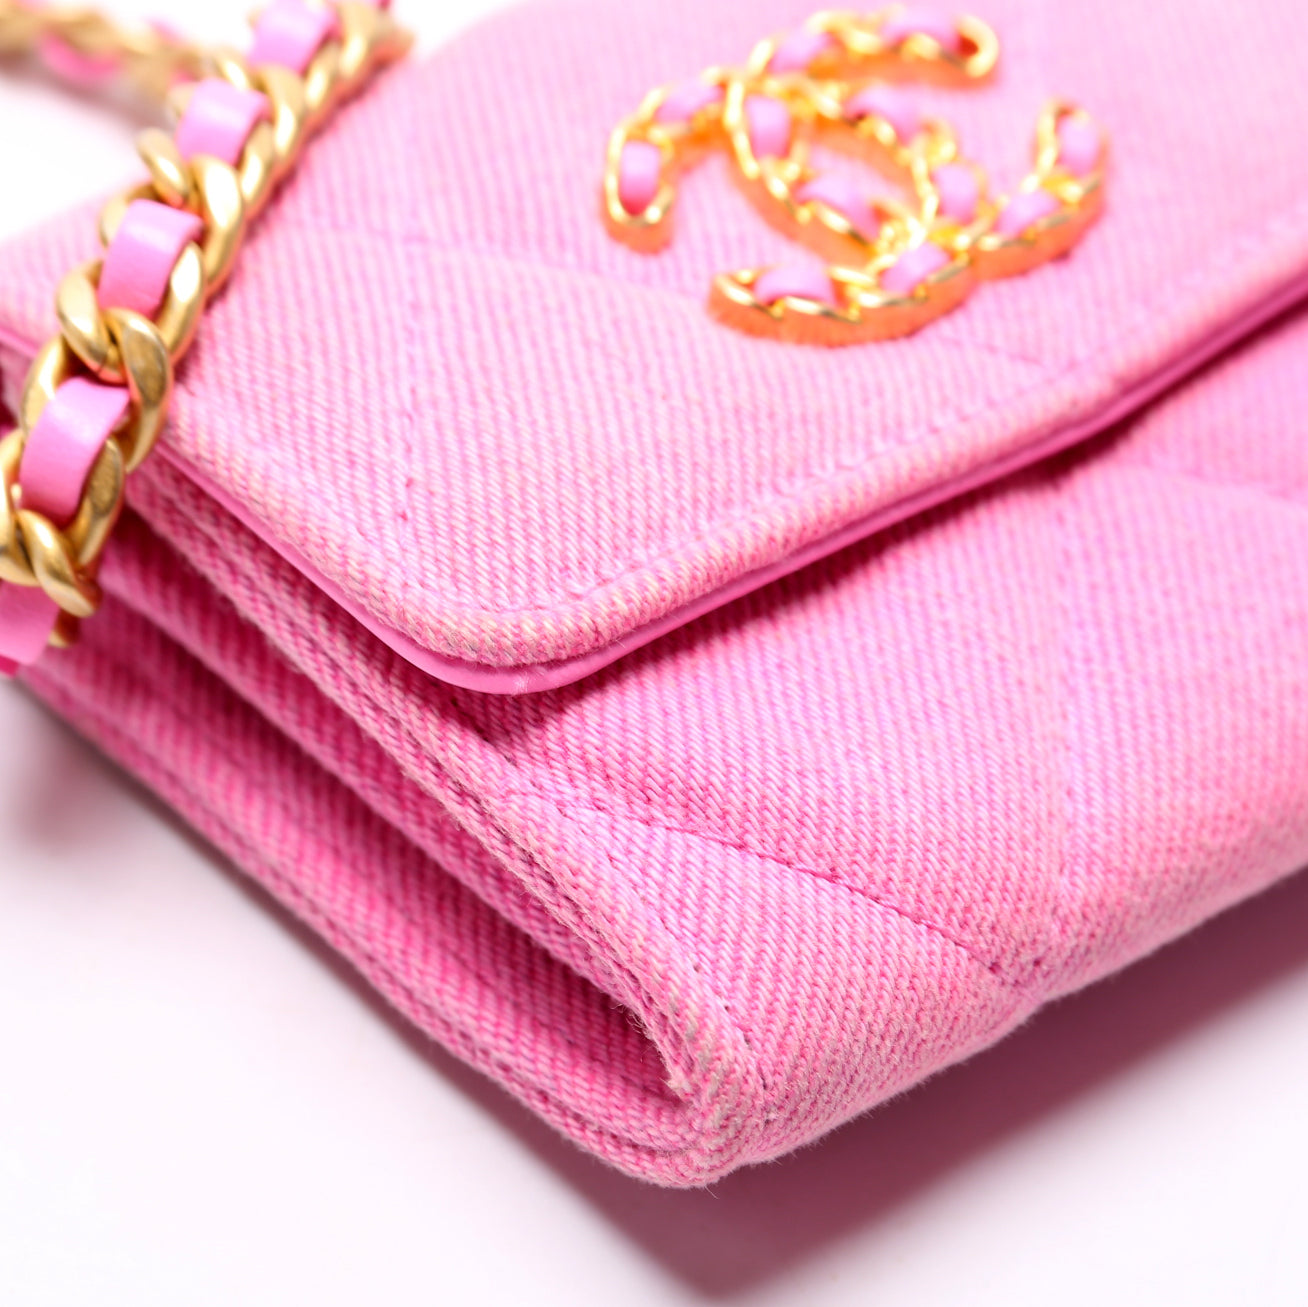 19 Flap Coin Purse W/Chain – Keeks Designer Handbags